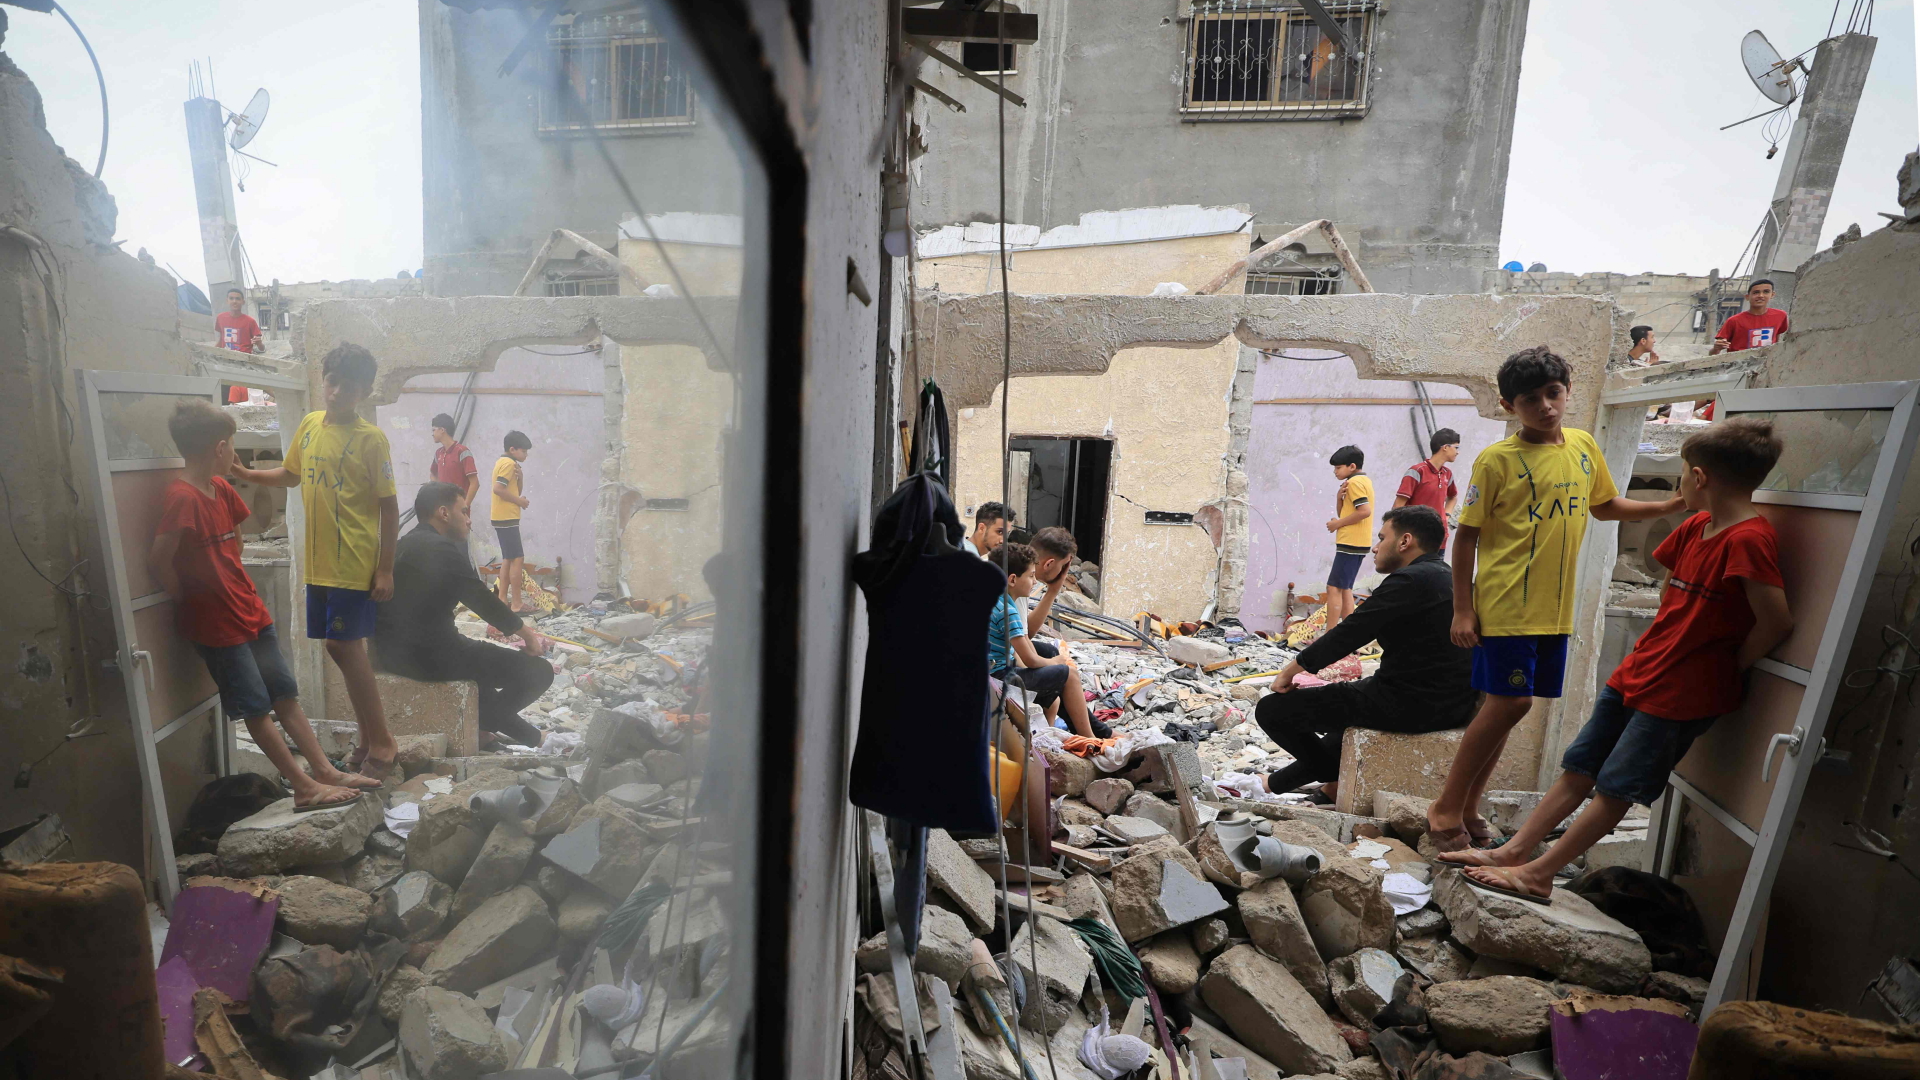 Kinder stehen im Schutt eines zerstörten Hauses in Khan Yunis, Gazastreifen